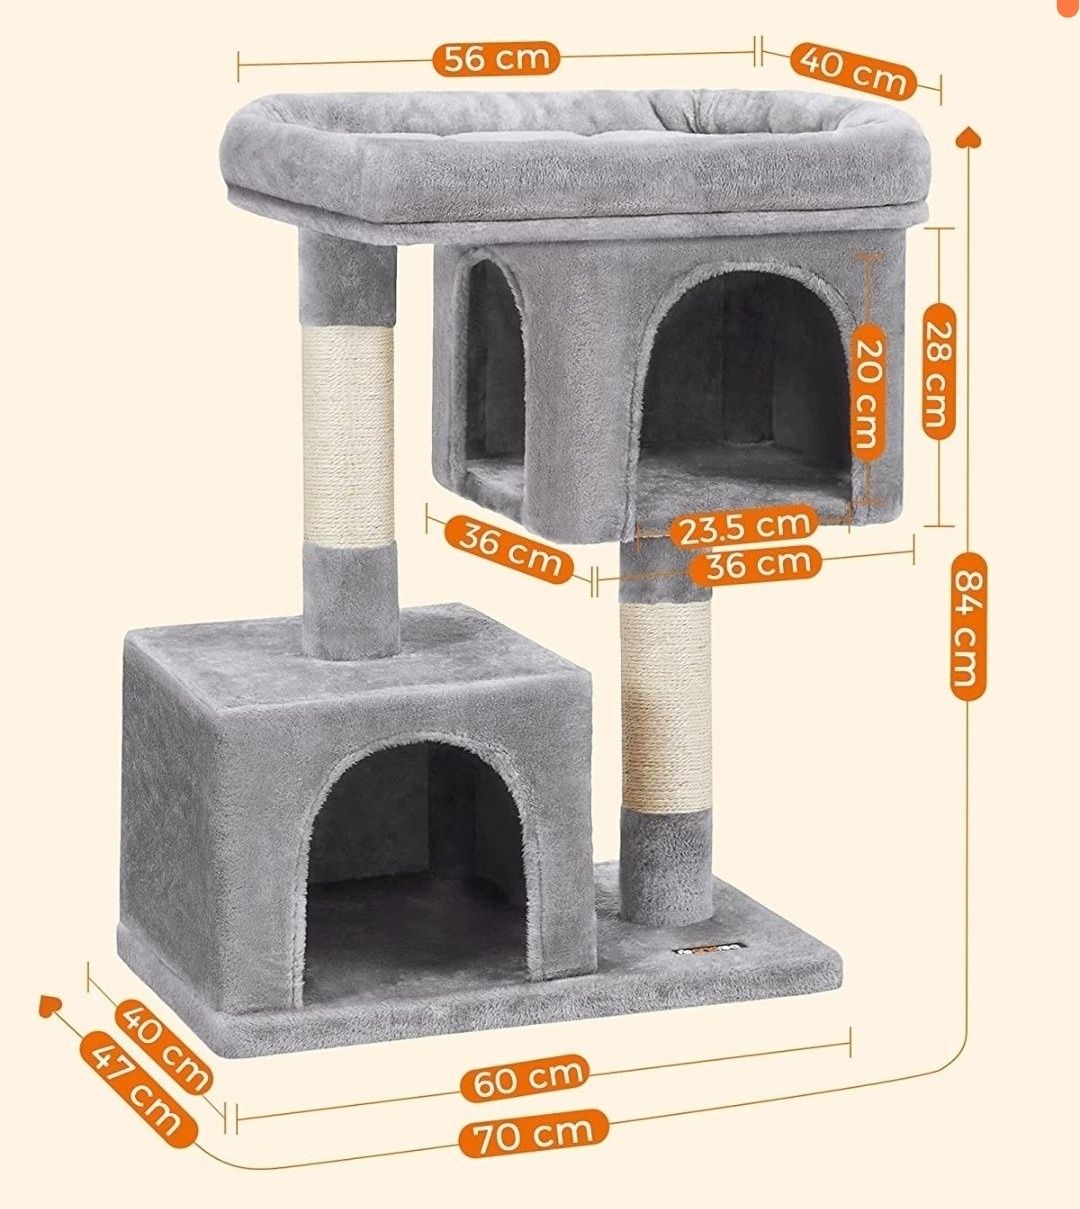 FEANDREA drapak kompaktowy dla kota z 2 domkami jasnoszary okazja